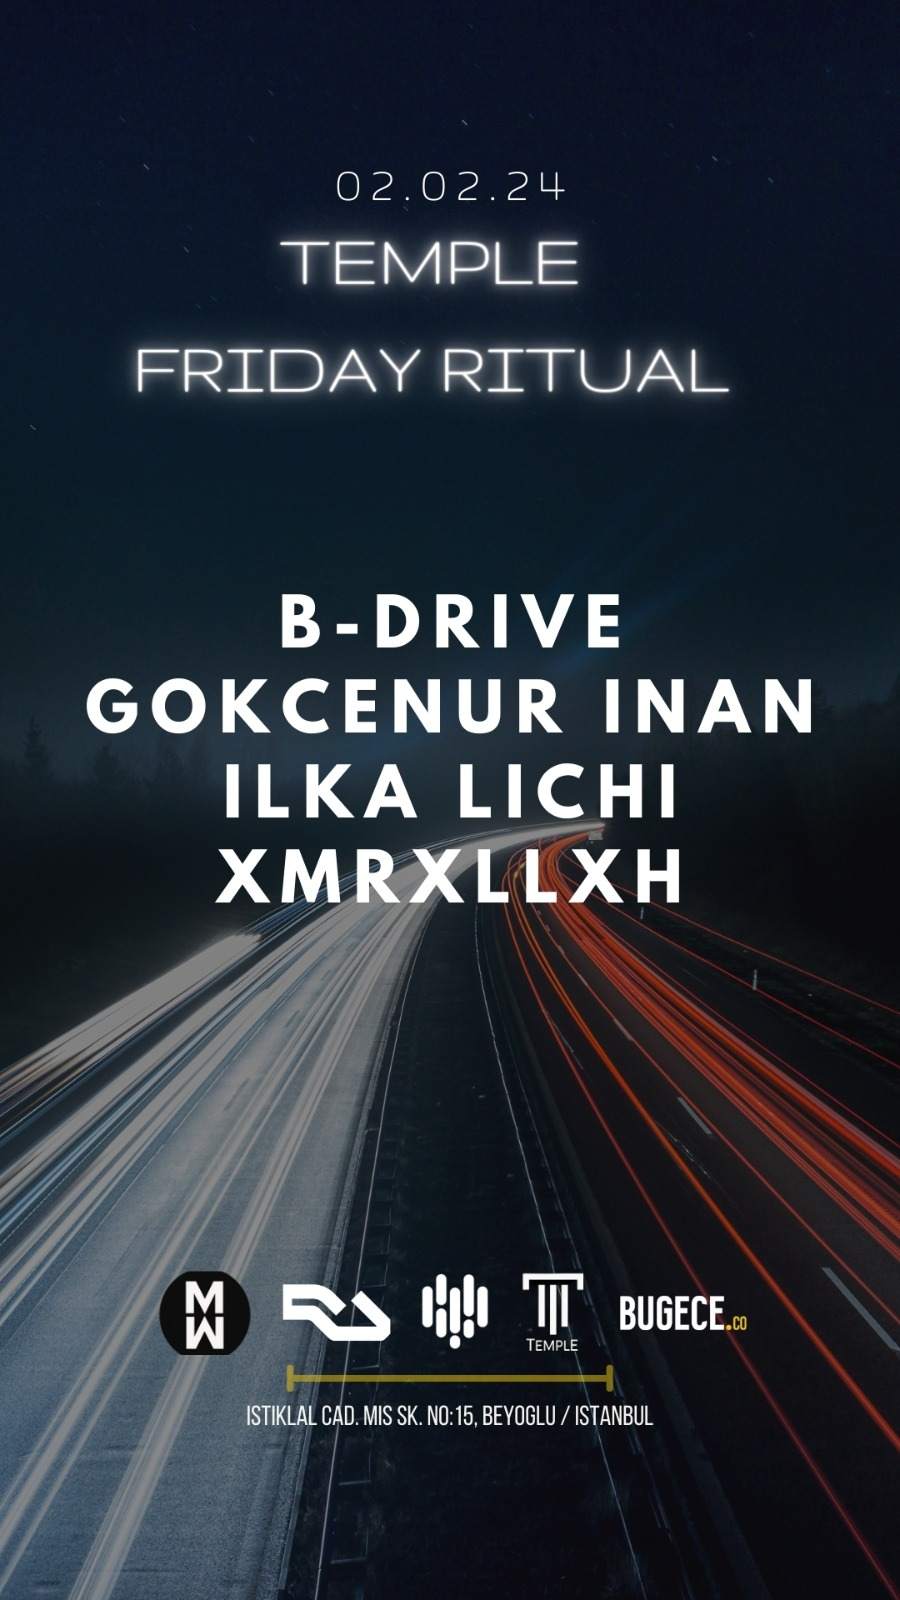 Friday Ritual - フライヤー表